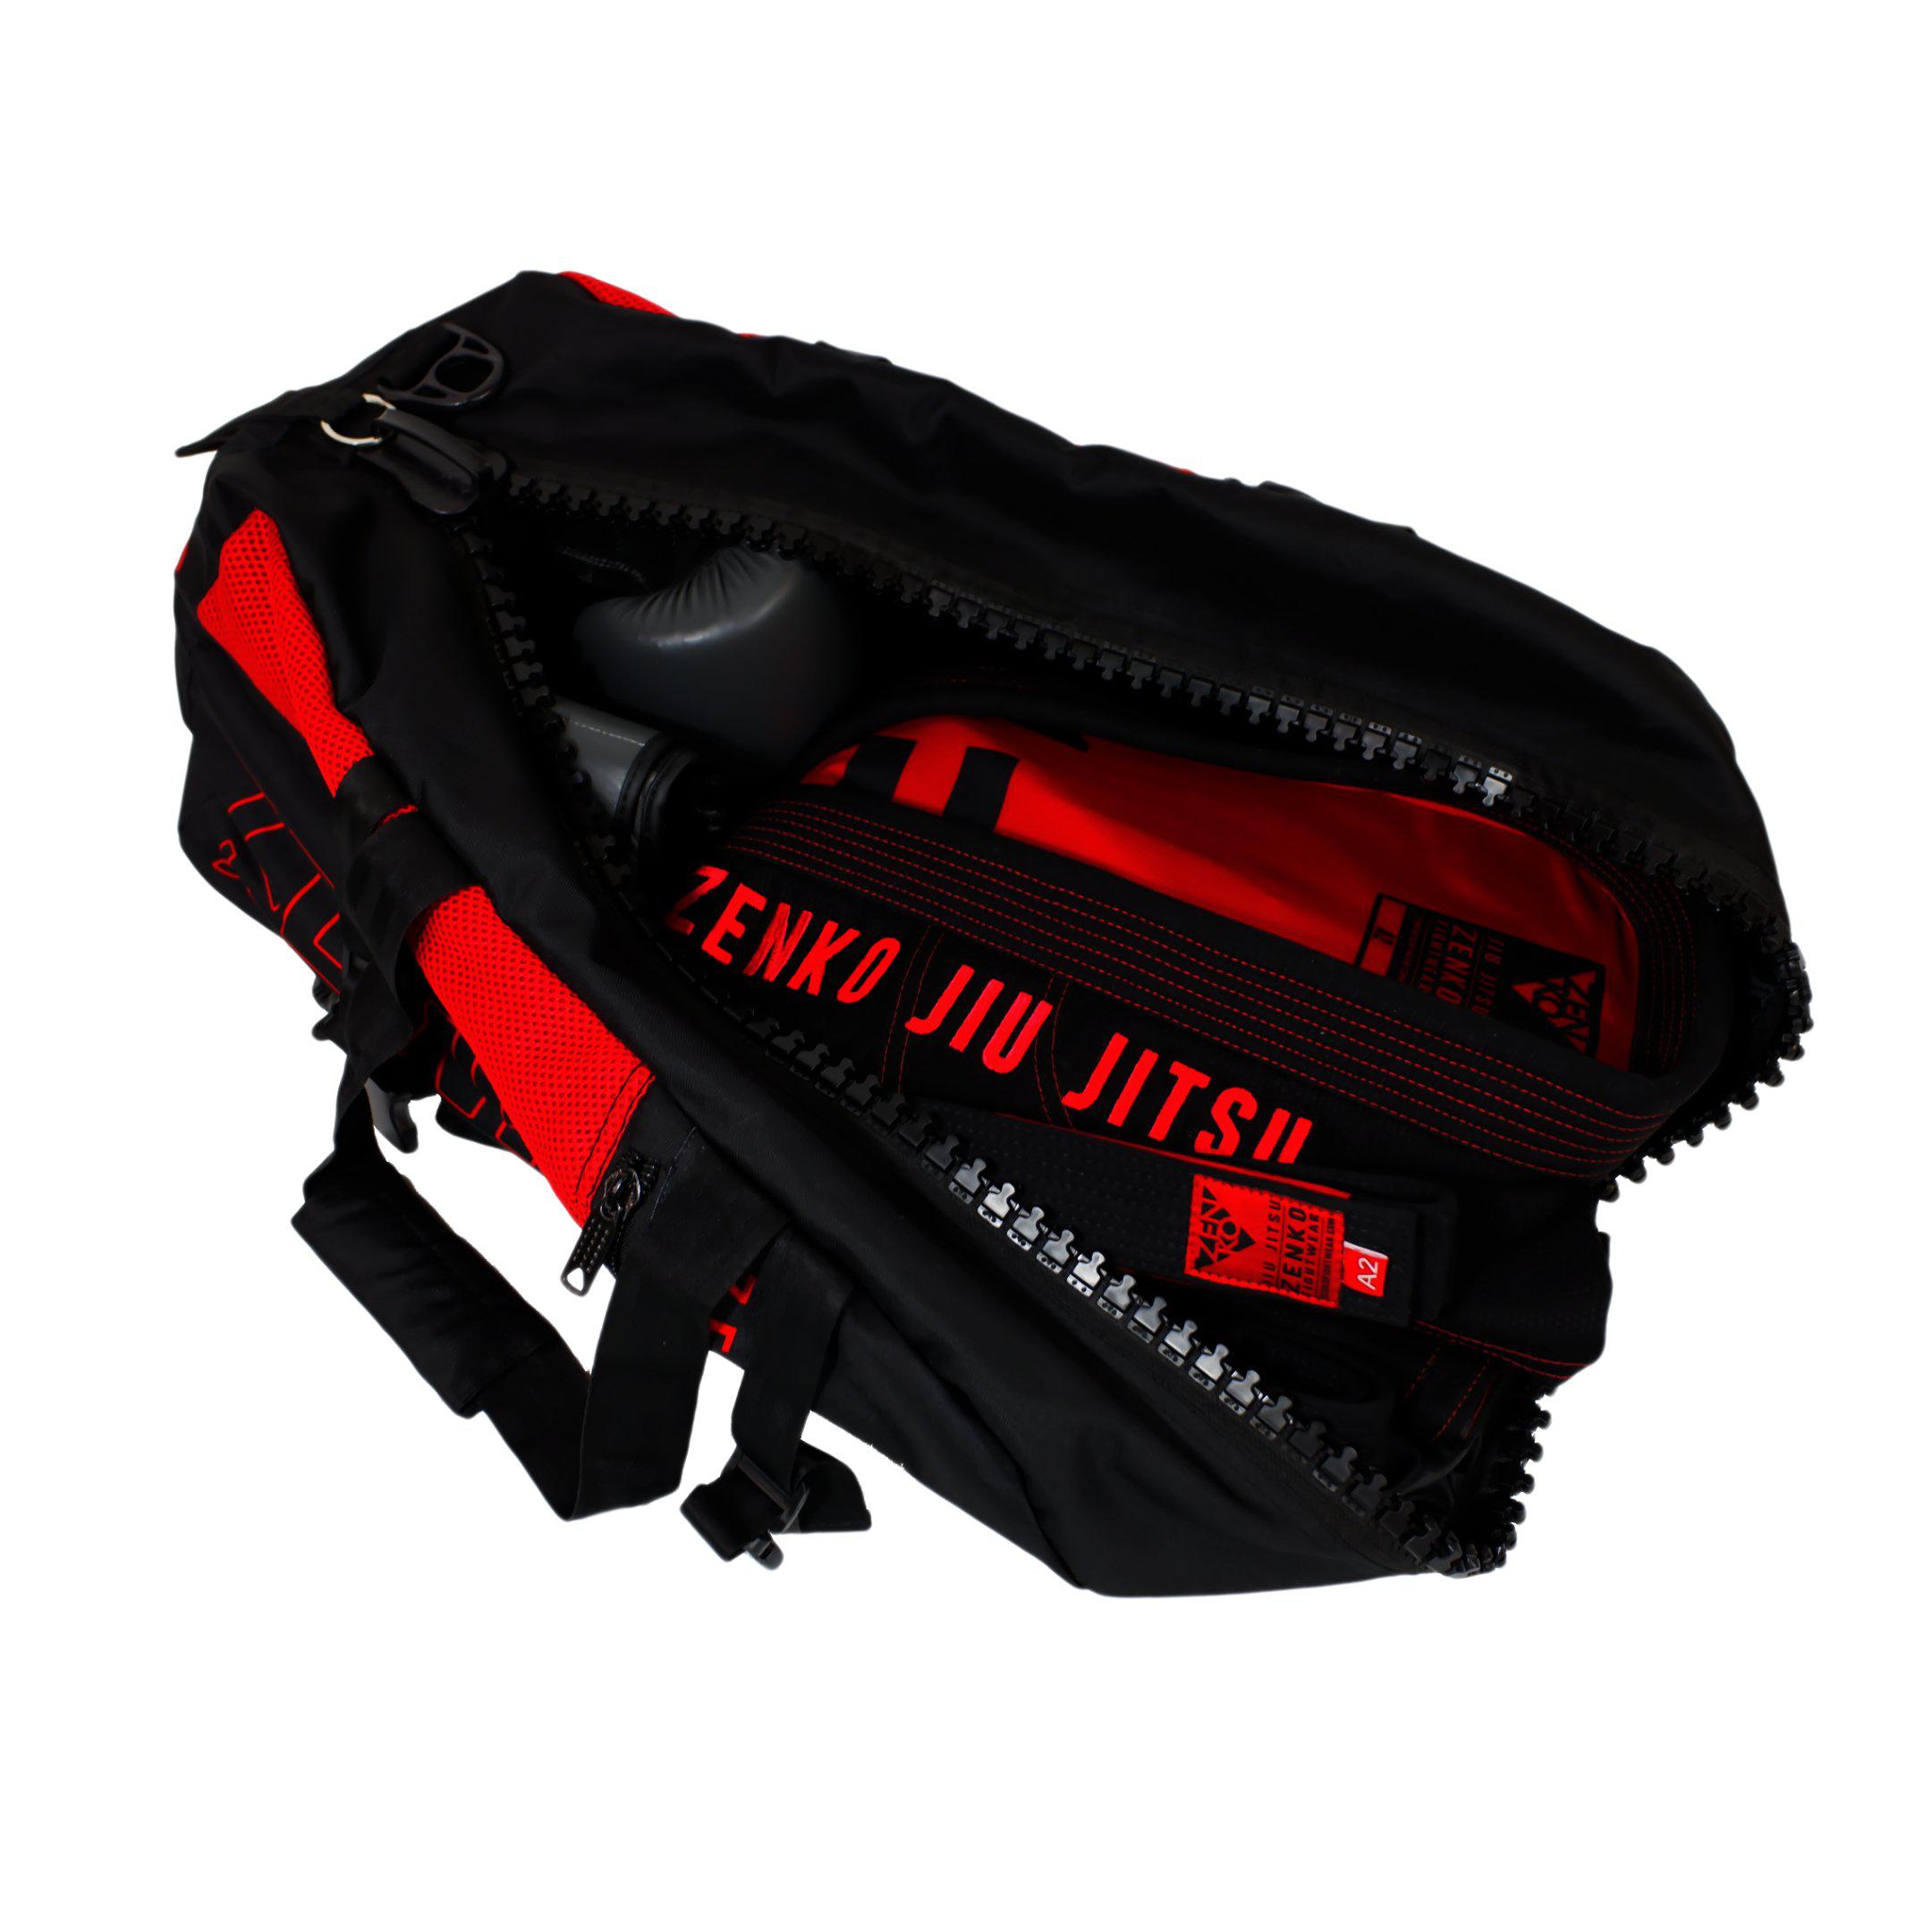 Zenko Fightwear - Ultimate Gear Bag - Red